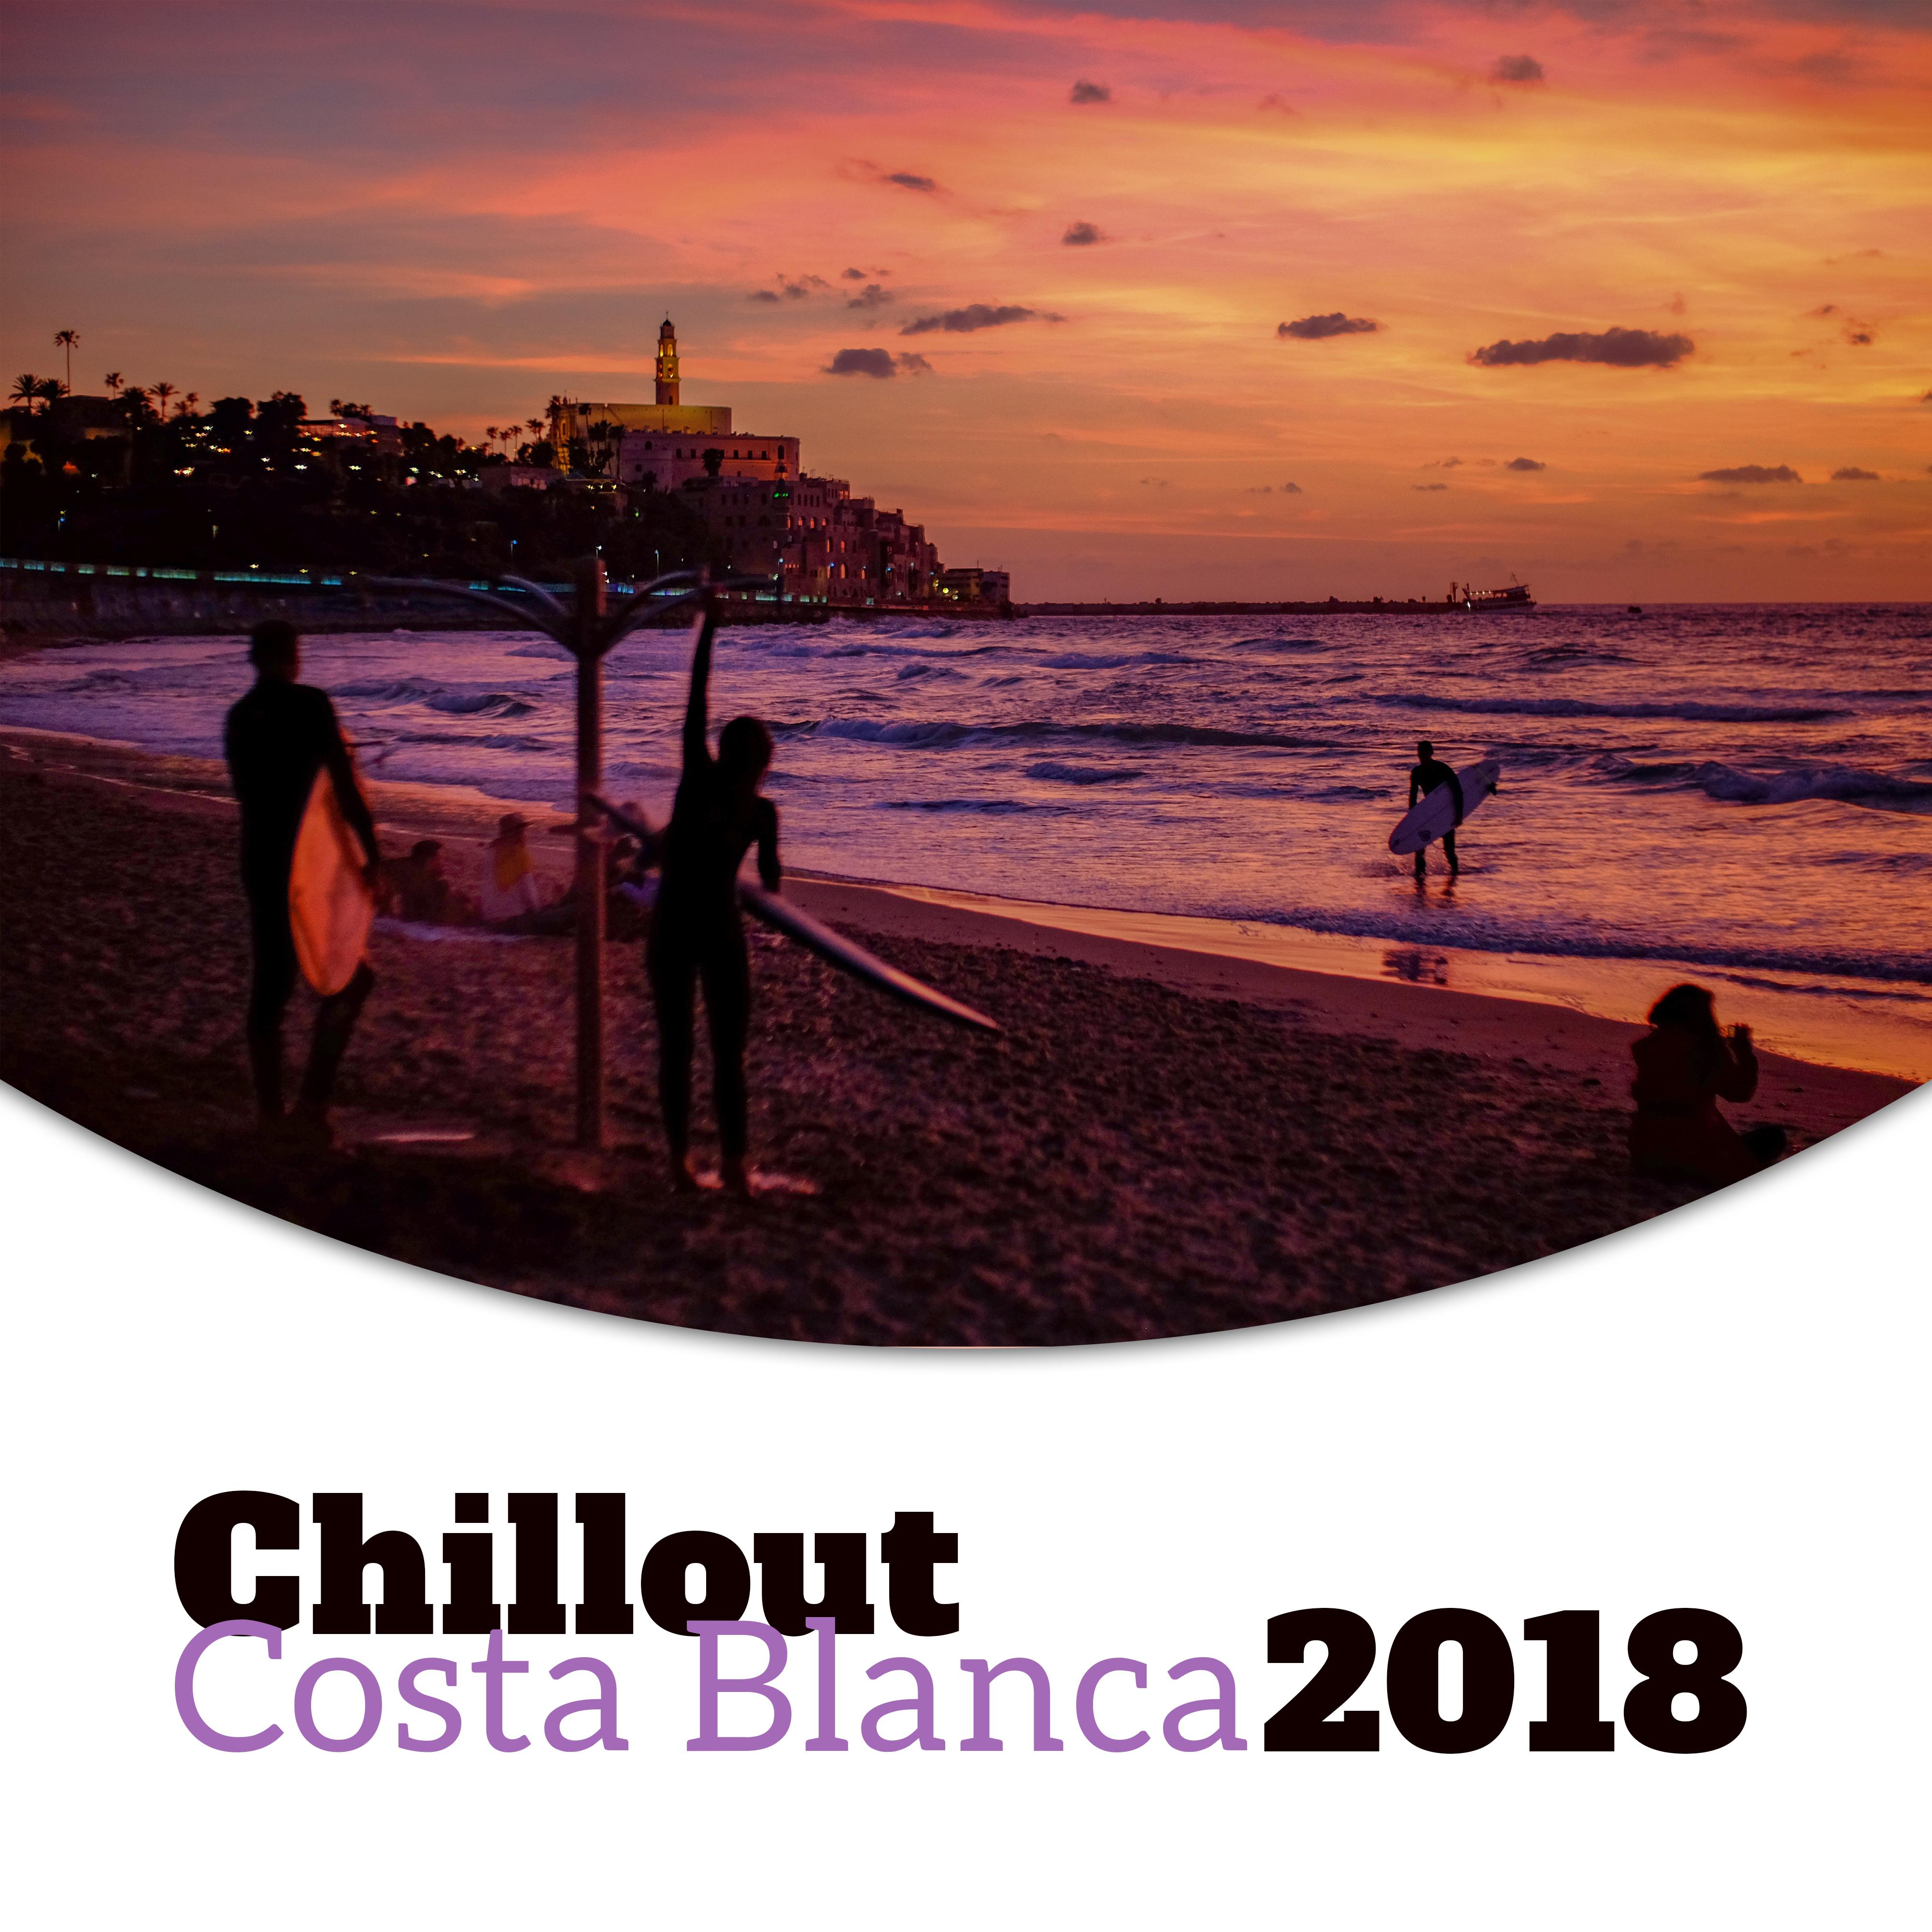 Chillout Costa Blanca 2018